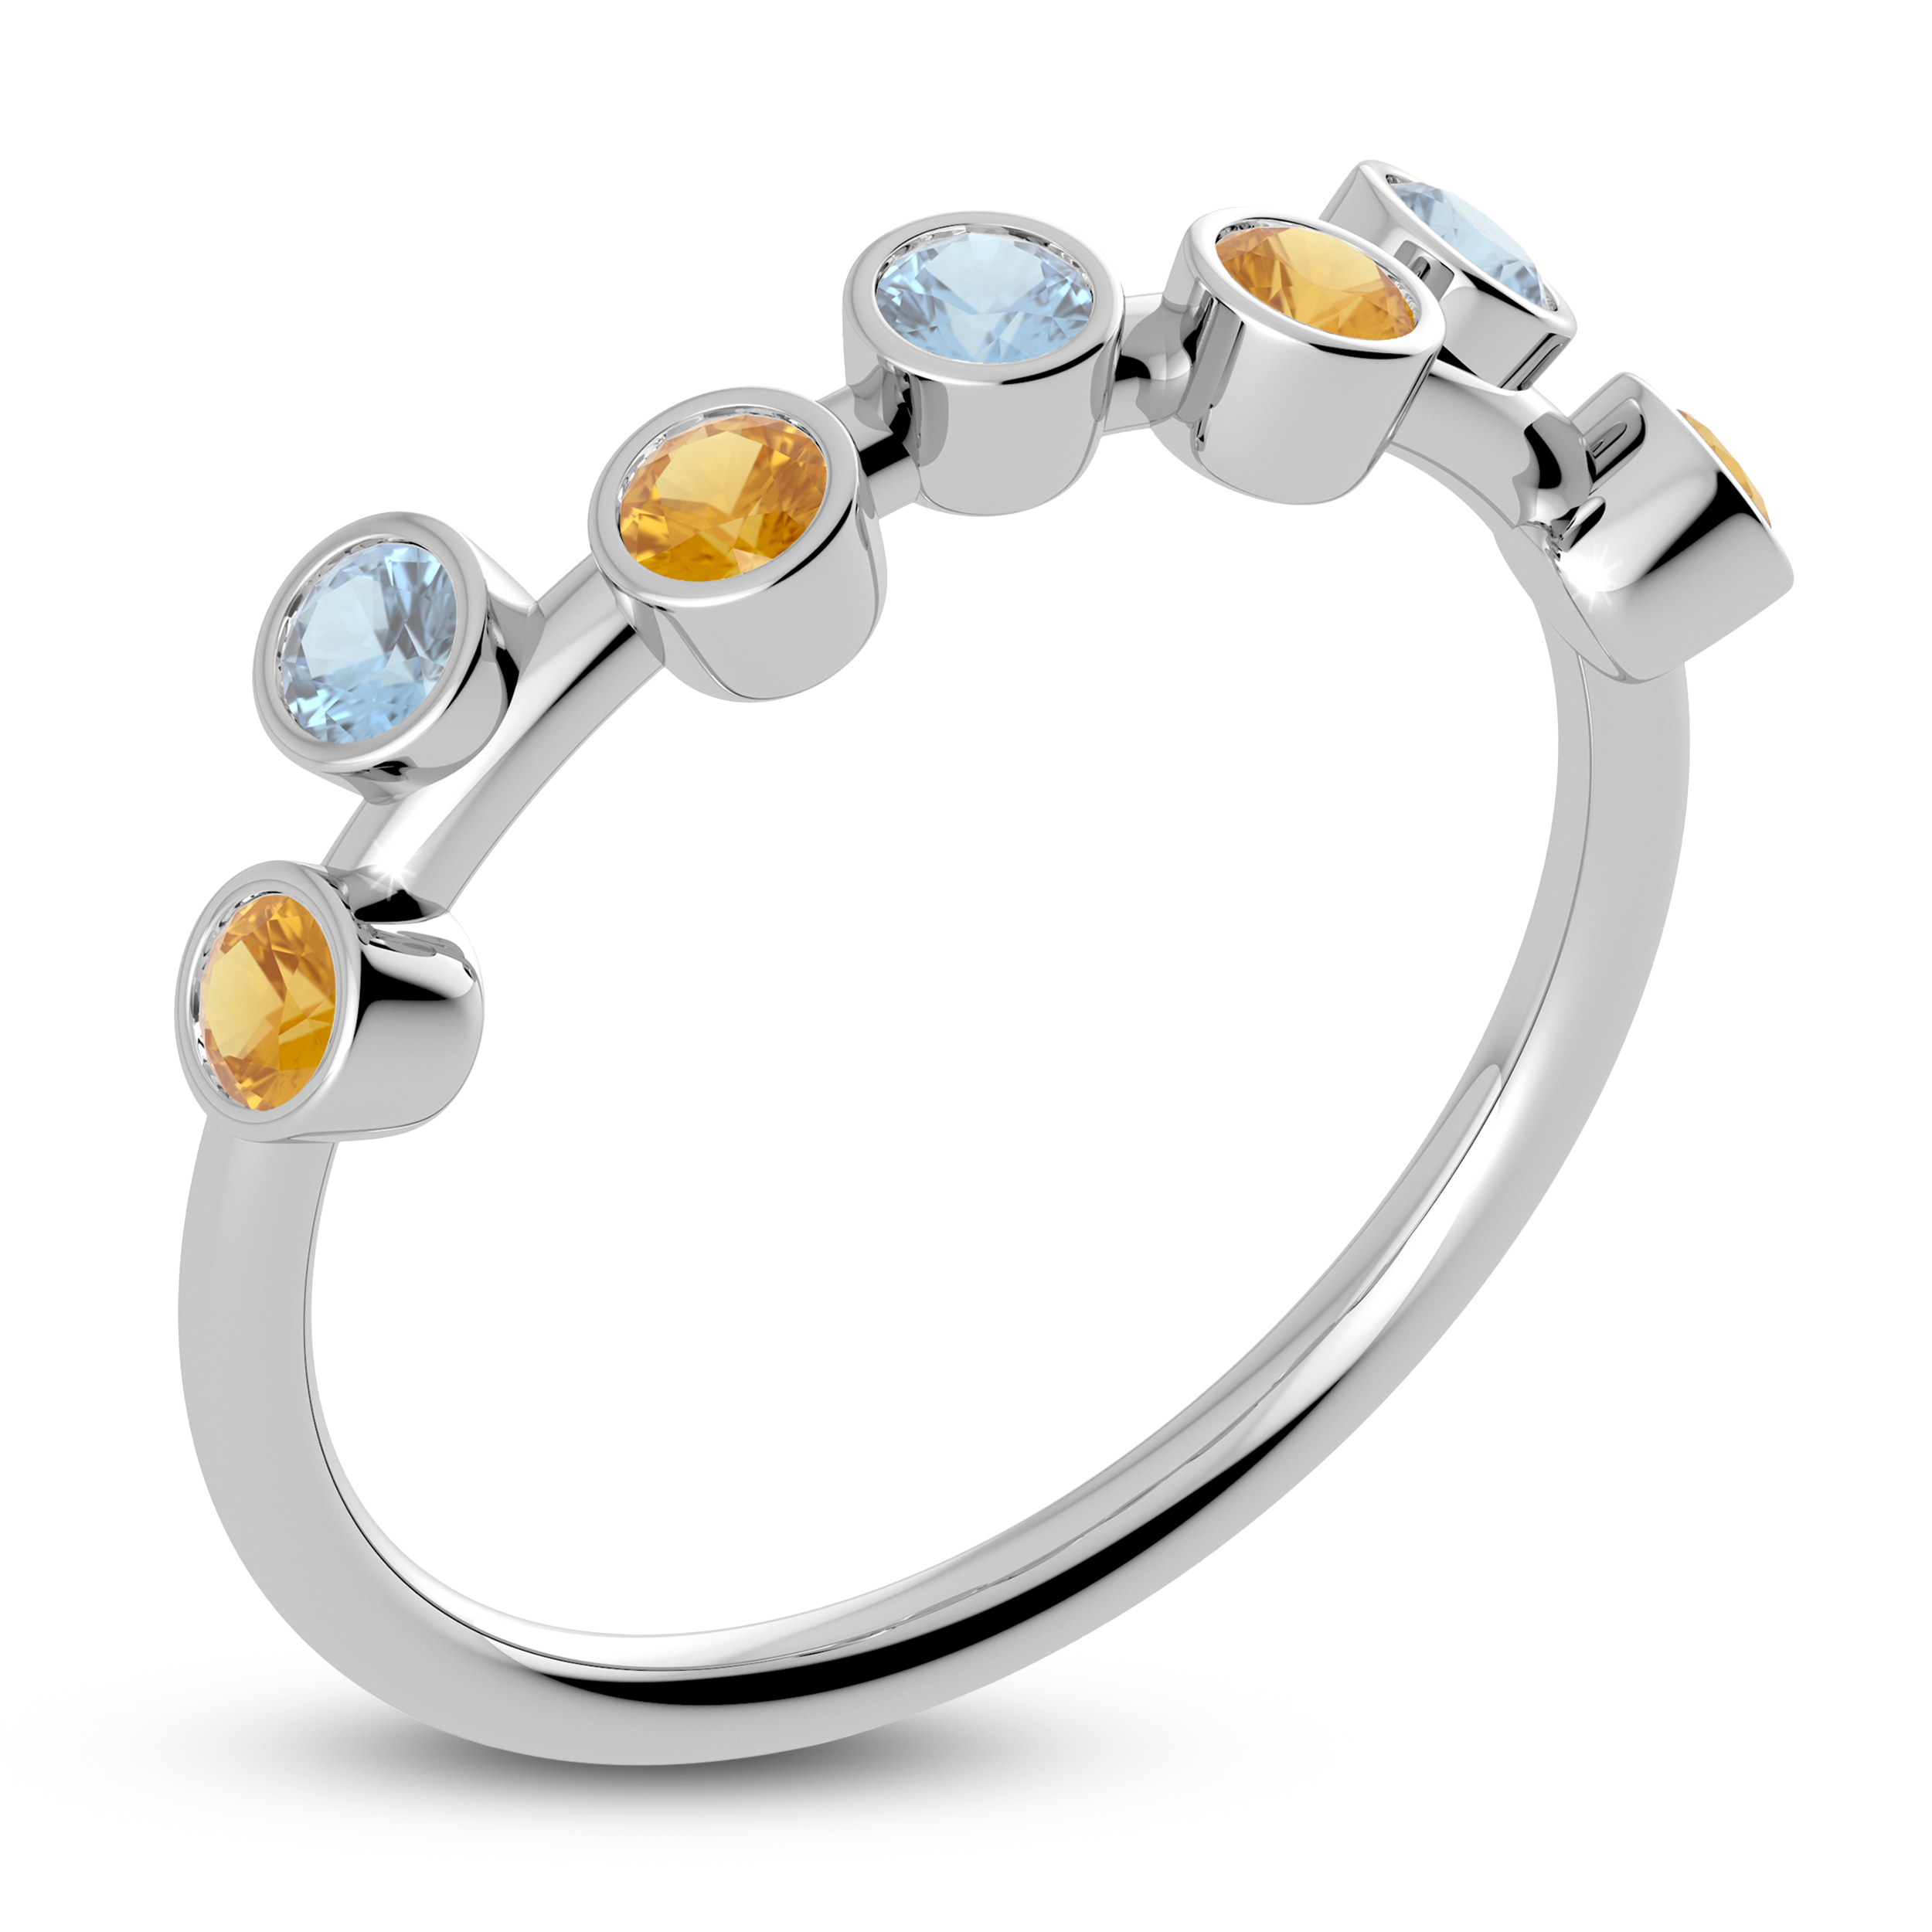 Juliette Maison Natural Orange Citrine & Natural Aquamarine Ring 10K White Gold vD55w8Oi